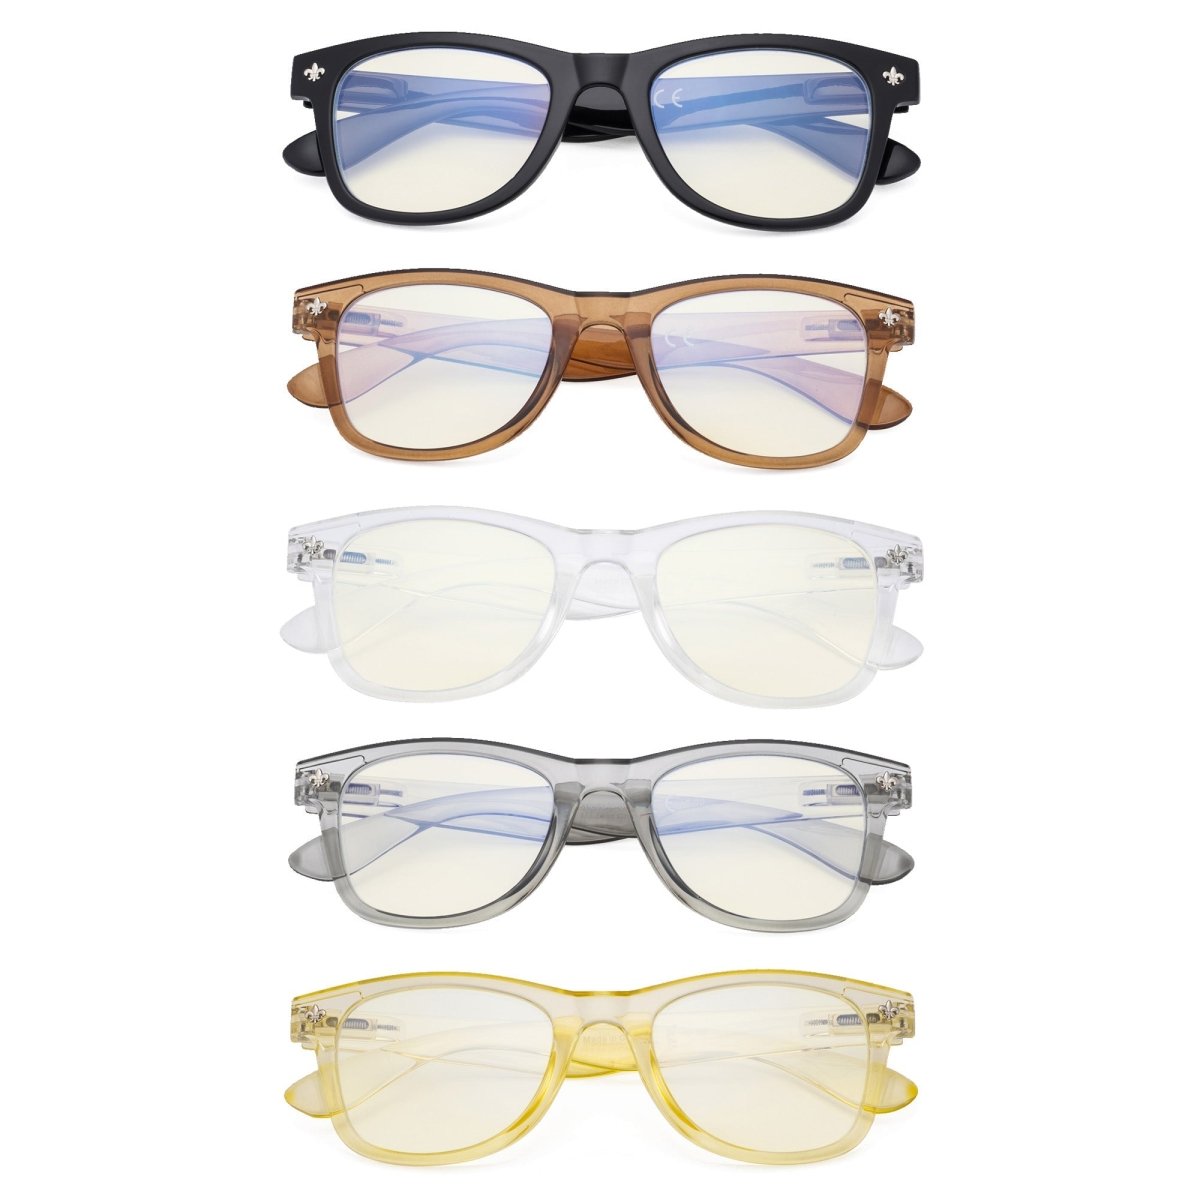 5 Pack Elegant Blue Light Filter Eyeglasses Women UVRS027eyekeeper.com